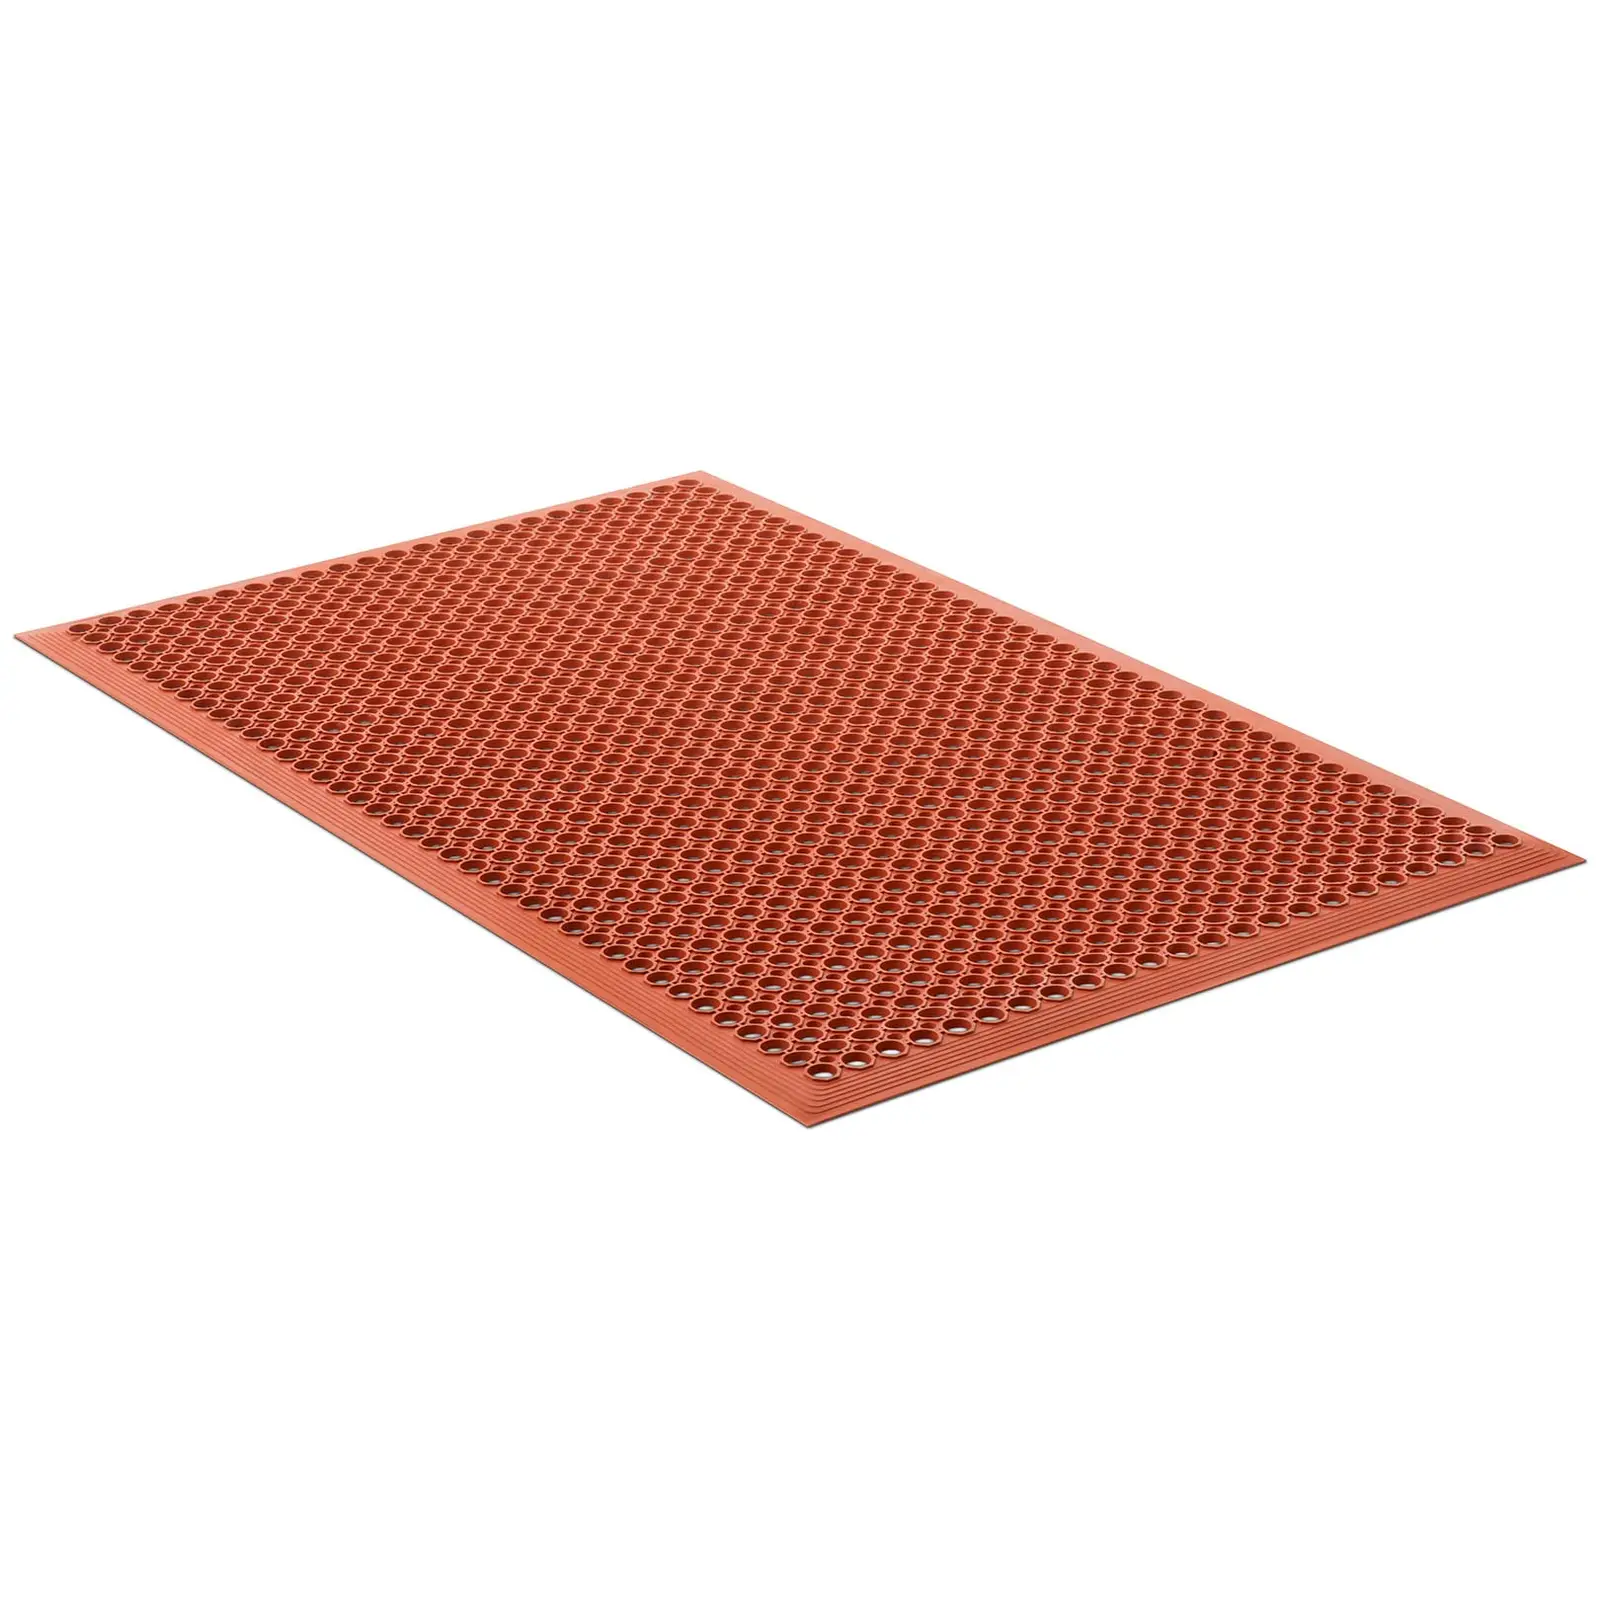 Rubberen mat - 153 x 92 x 1 cm - rood